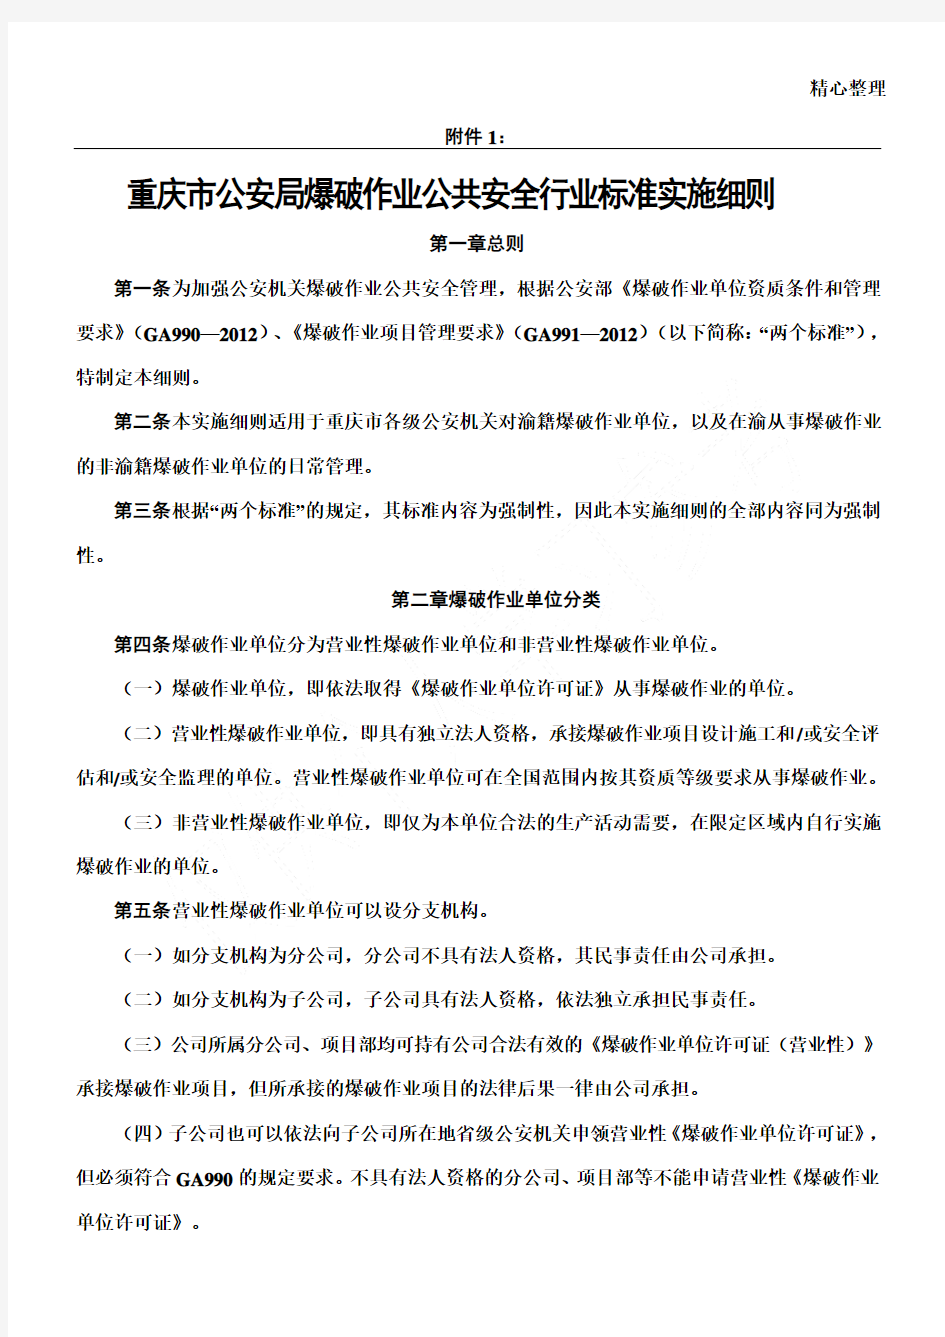 渝公发〔2012〕190号 重庆市公安局爆破作业公共安全行业标准实施细